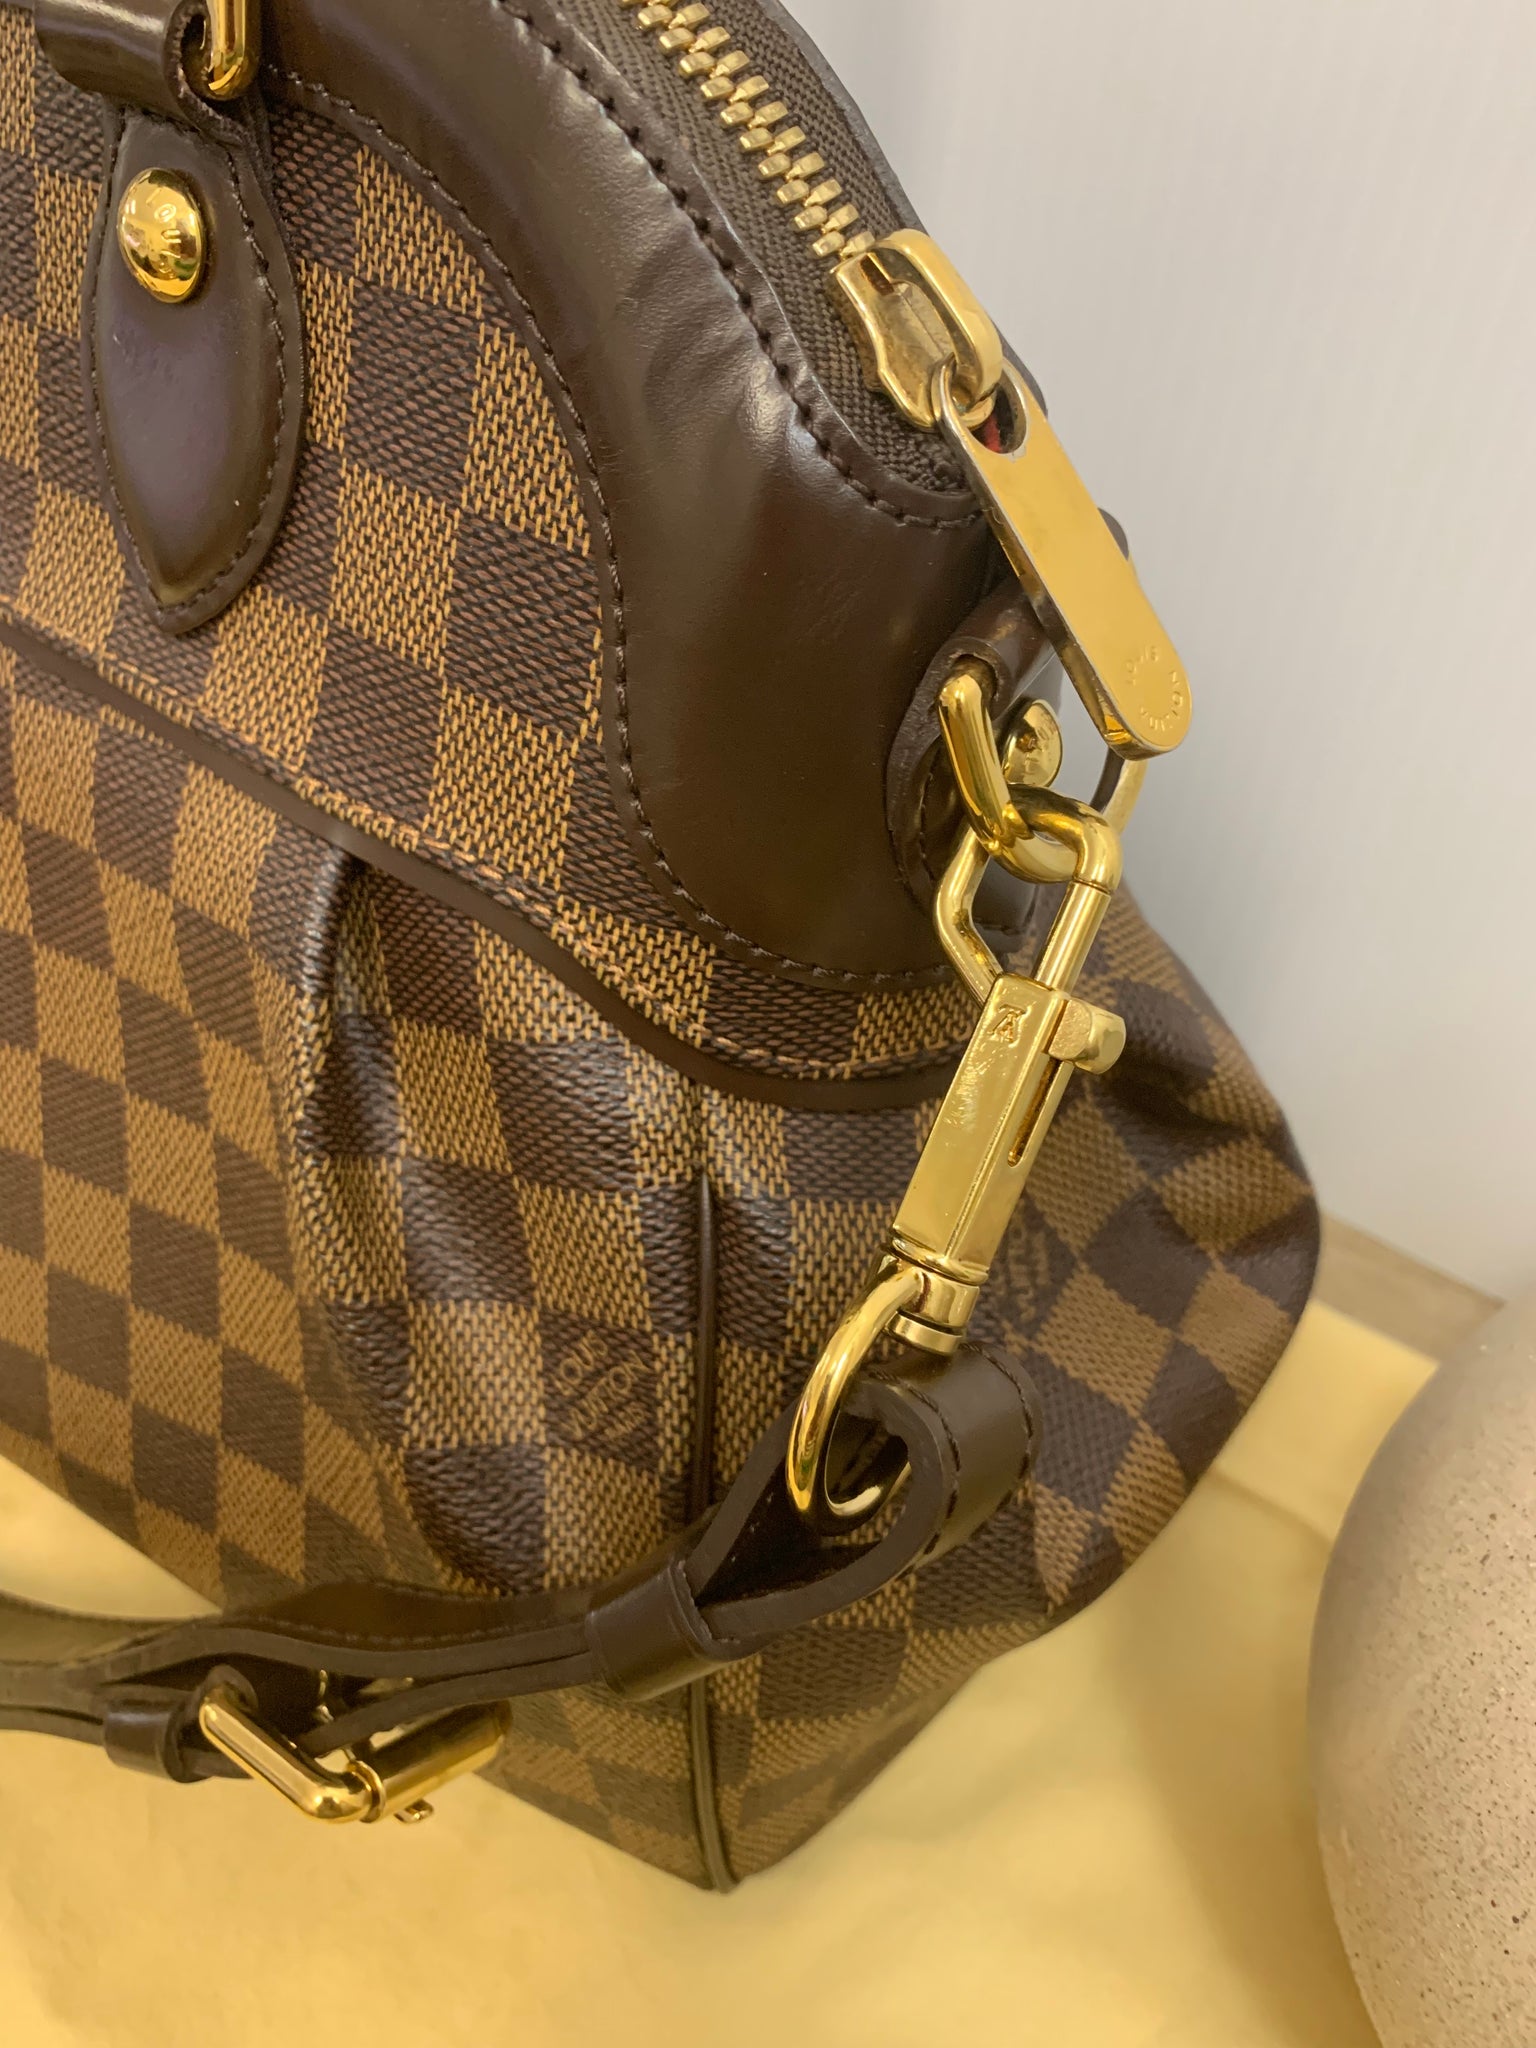 Authentic Louis Vuitton Trevi PM Bag